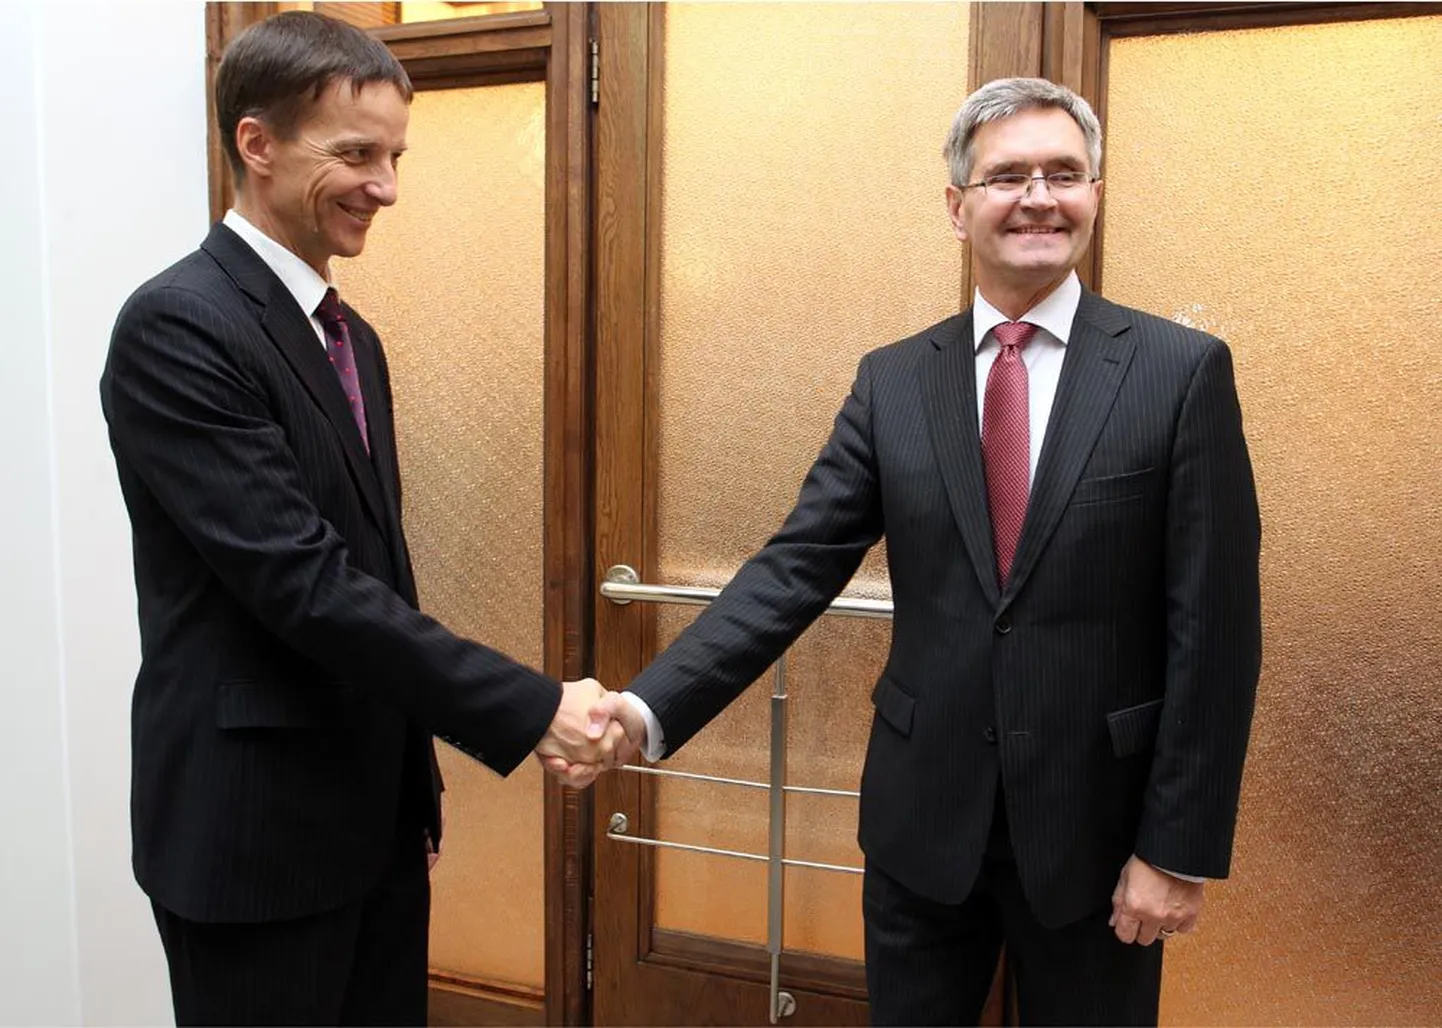 Eesti Panga tulevane president Ardo Hansson (vasakul) koos oma eelkäija Andres Lipstokiga.